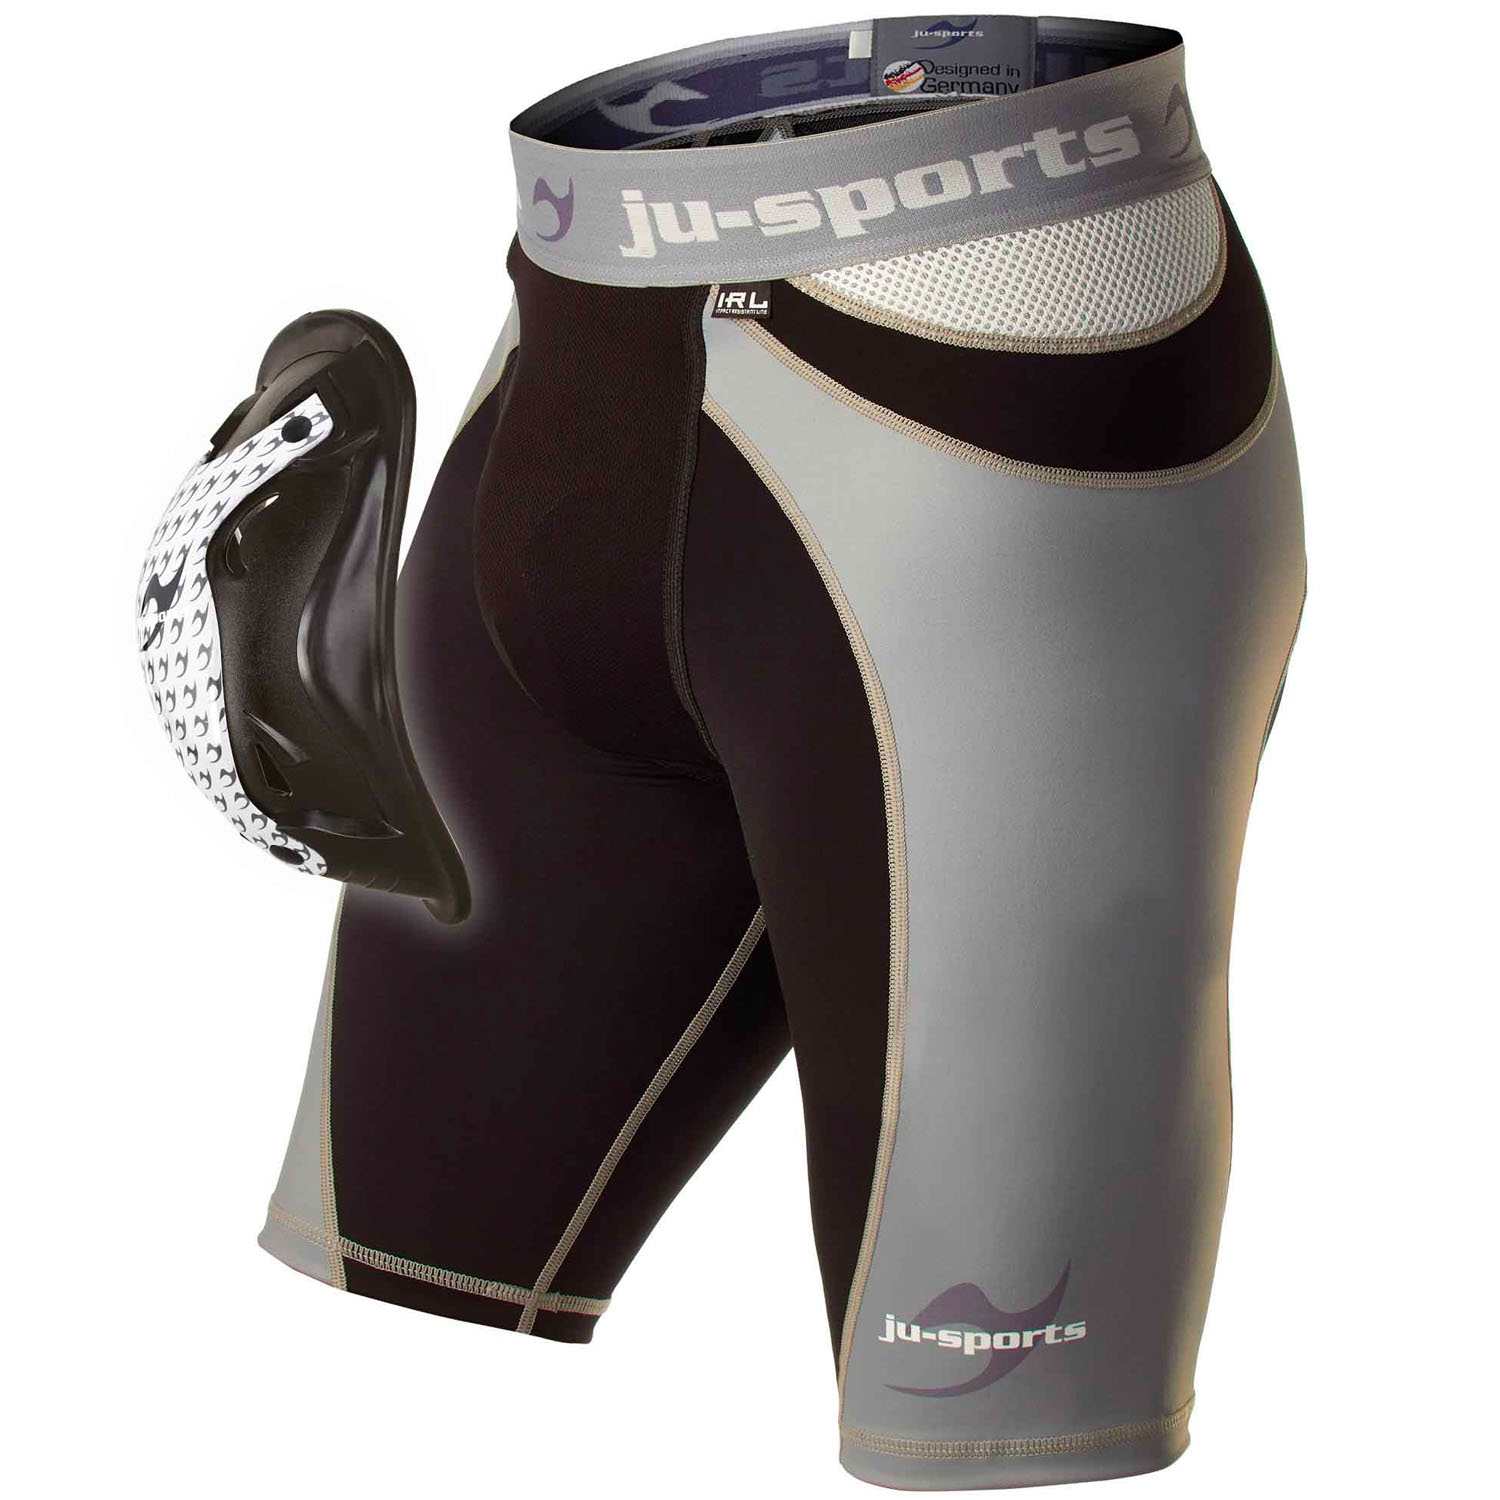 Ju-Sports Compression Shorts, Pro Line Motion Pro Flexcup, S